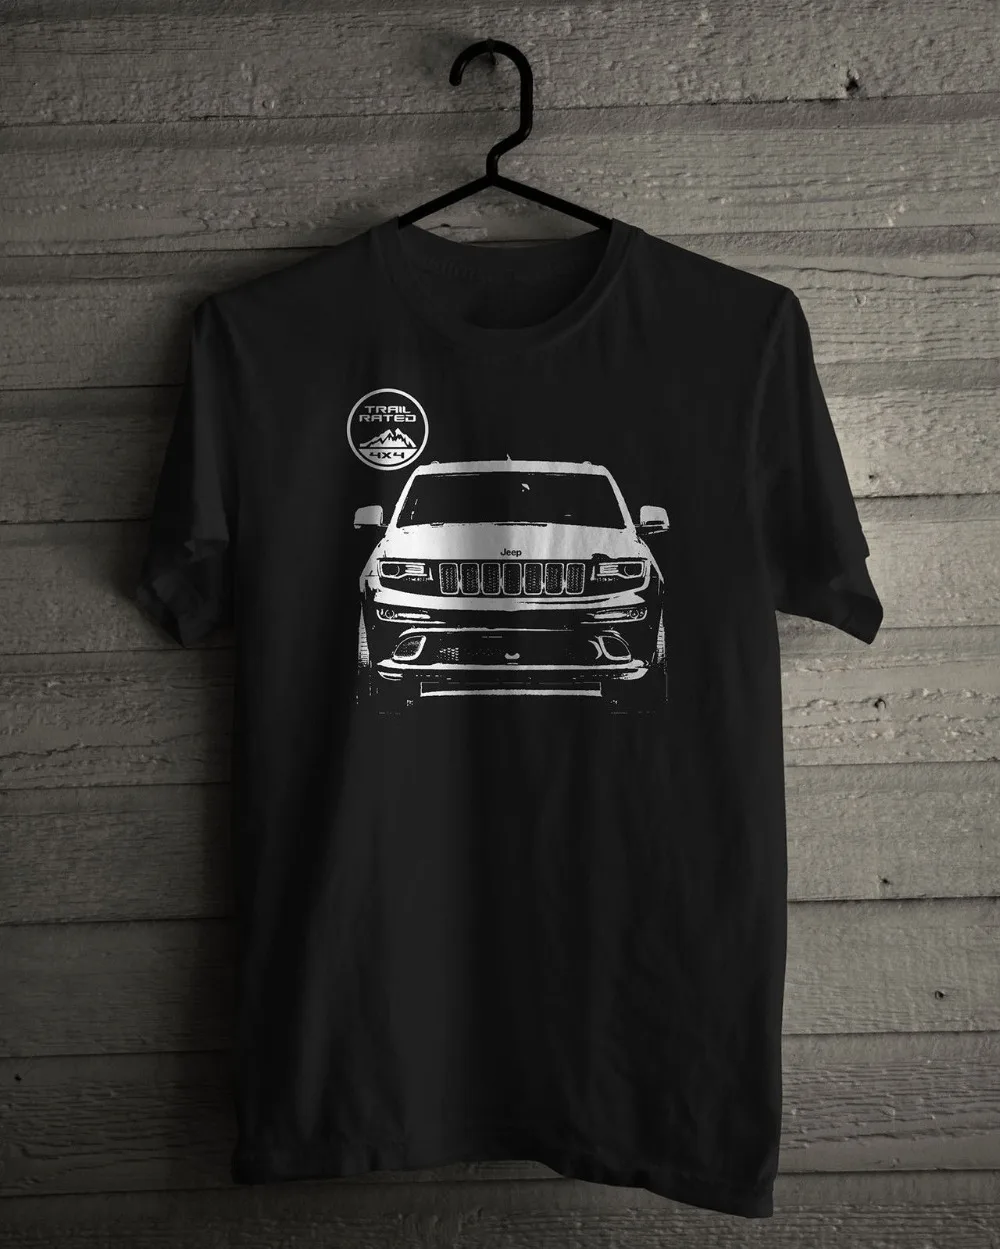 Новые модные футболки, футболки, новые Jeep Cherokee 4x4 Trail, черная футболка, размеры от s до 3XL, одежда с круглым вырезом